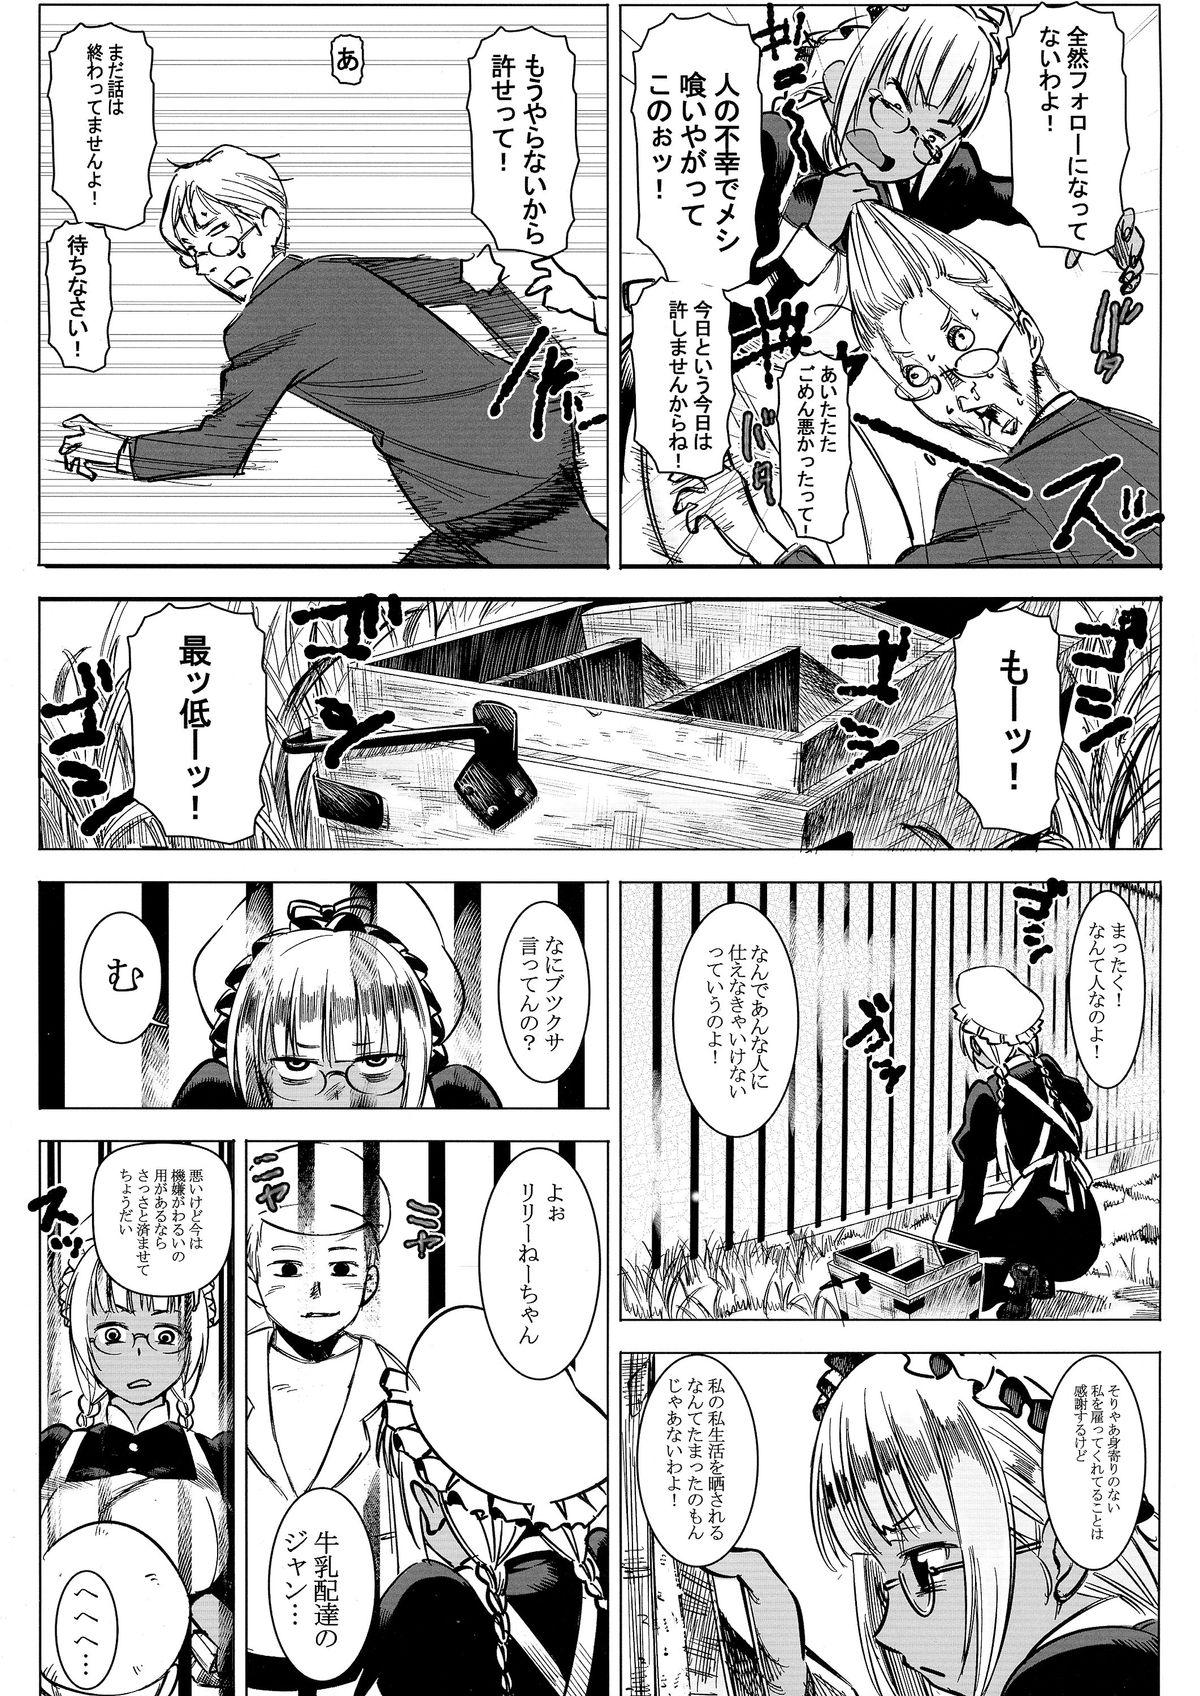 Old Man Kasshoku Kokumaro Funnyuu Maid! Baka ka!!! Gayporn - Page 4